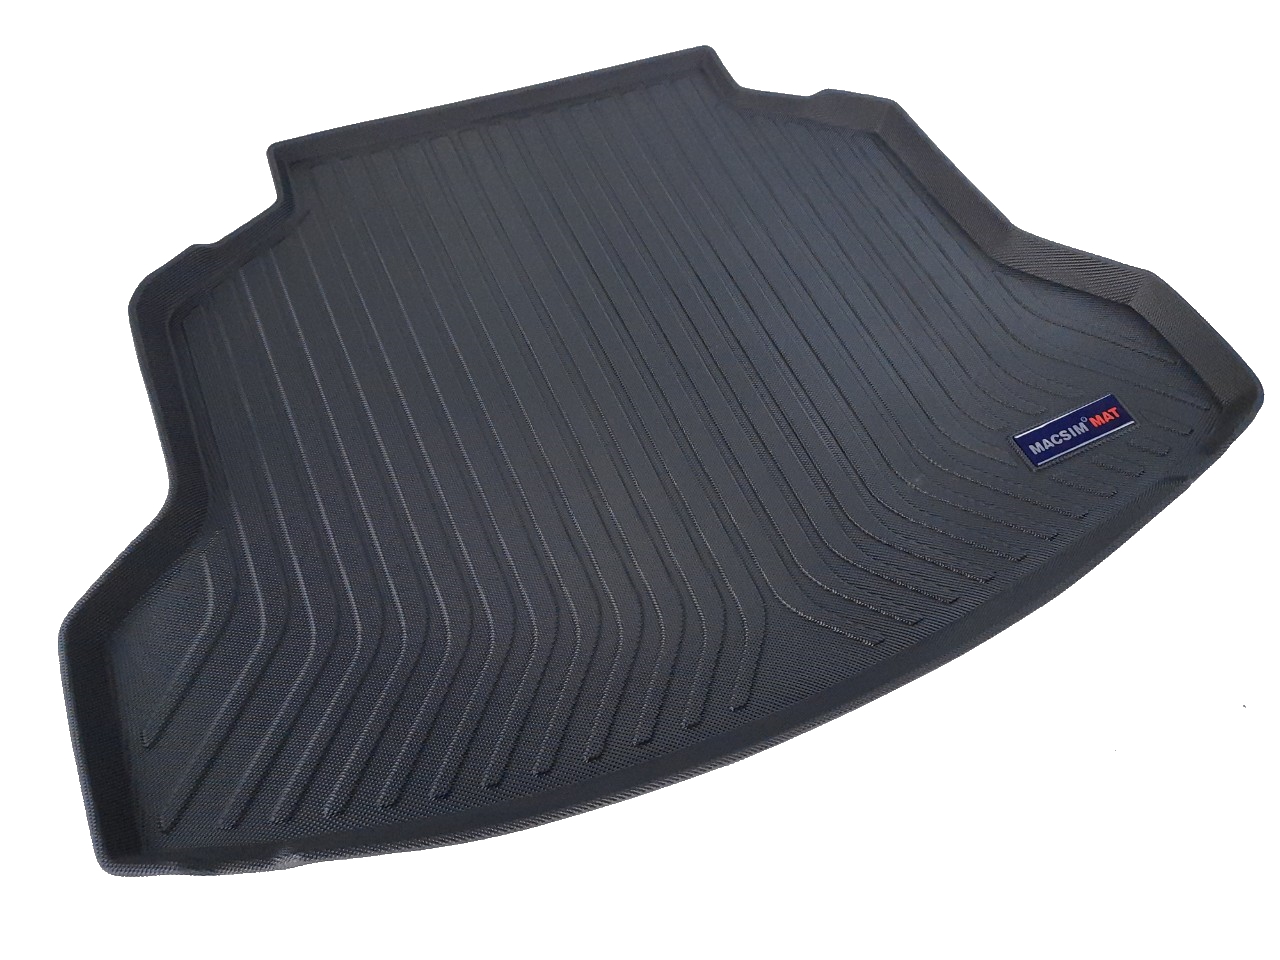 Thảm lót cốp xe ô tô Honda CRV 2013-2017 nhãn hiệu Macsim chất liệu TPV cao cấp màu đen(030) (Ảnh 3)